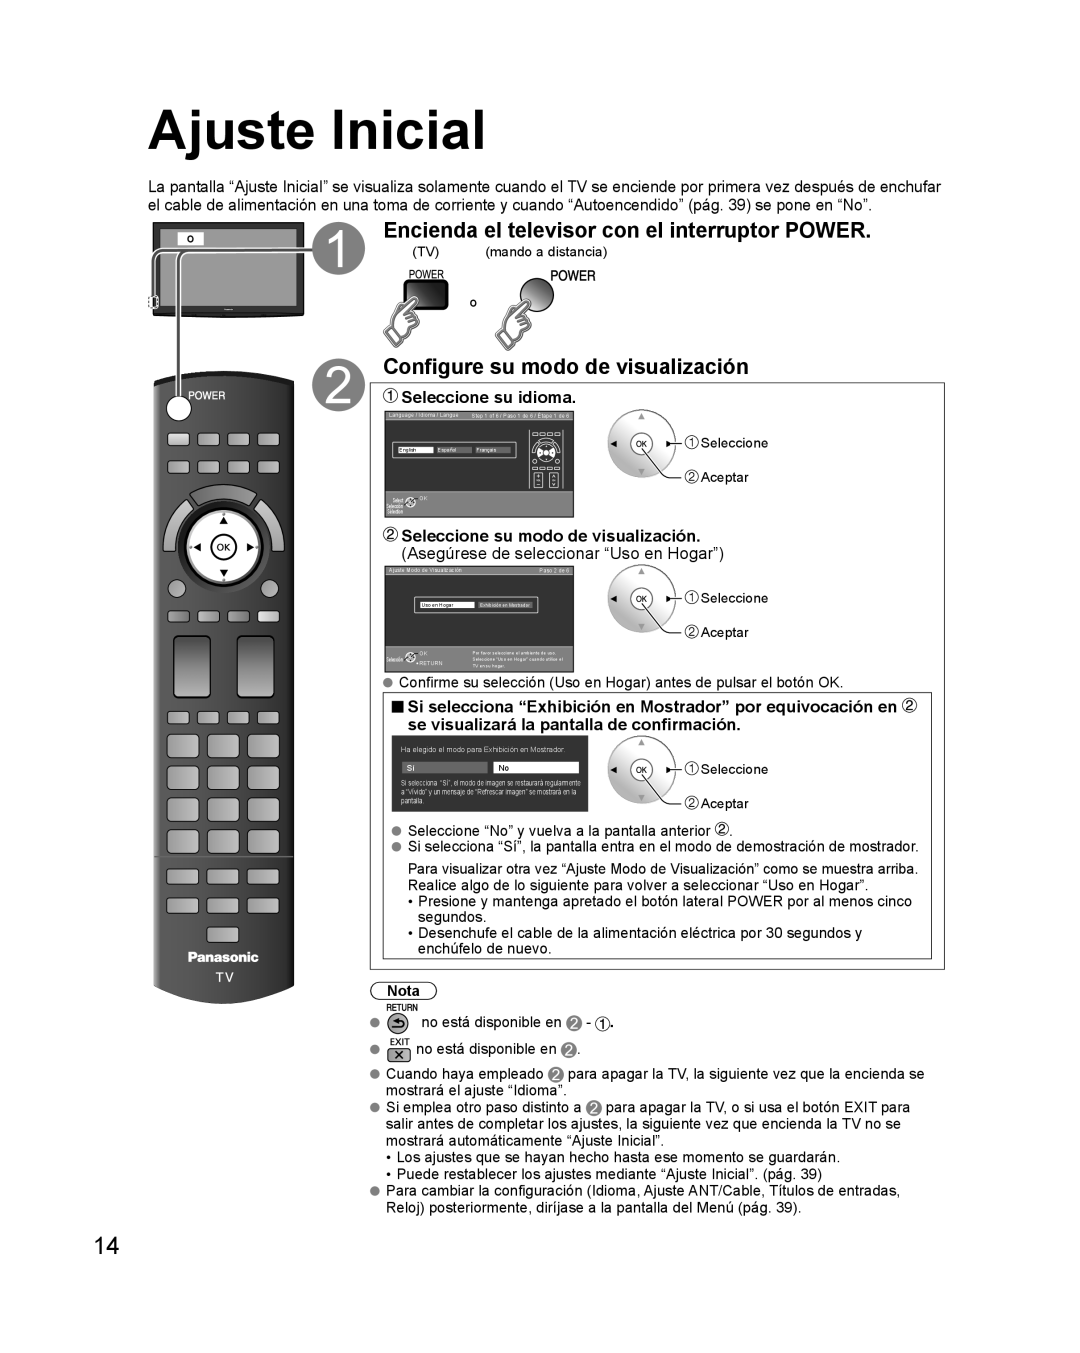 Panasonic TQB2AA0579 Ajuste Inicial, Encienda el televisor con el interruptor POWER, Configure su modo de visualización 